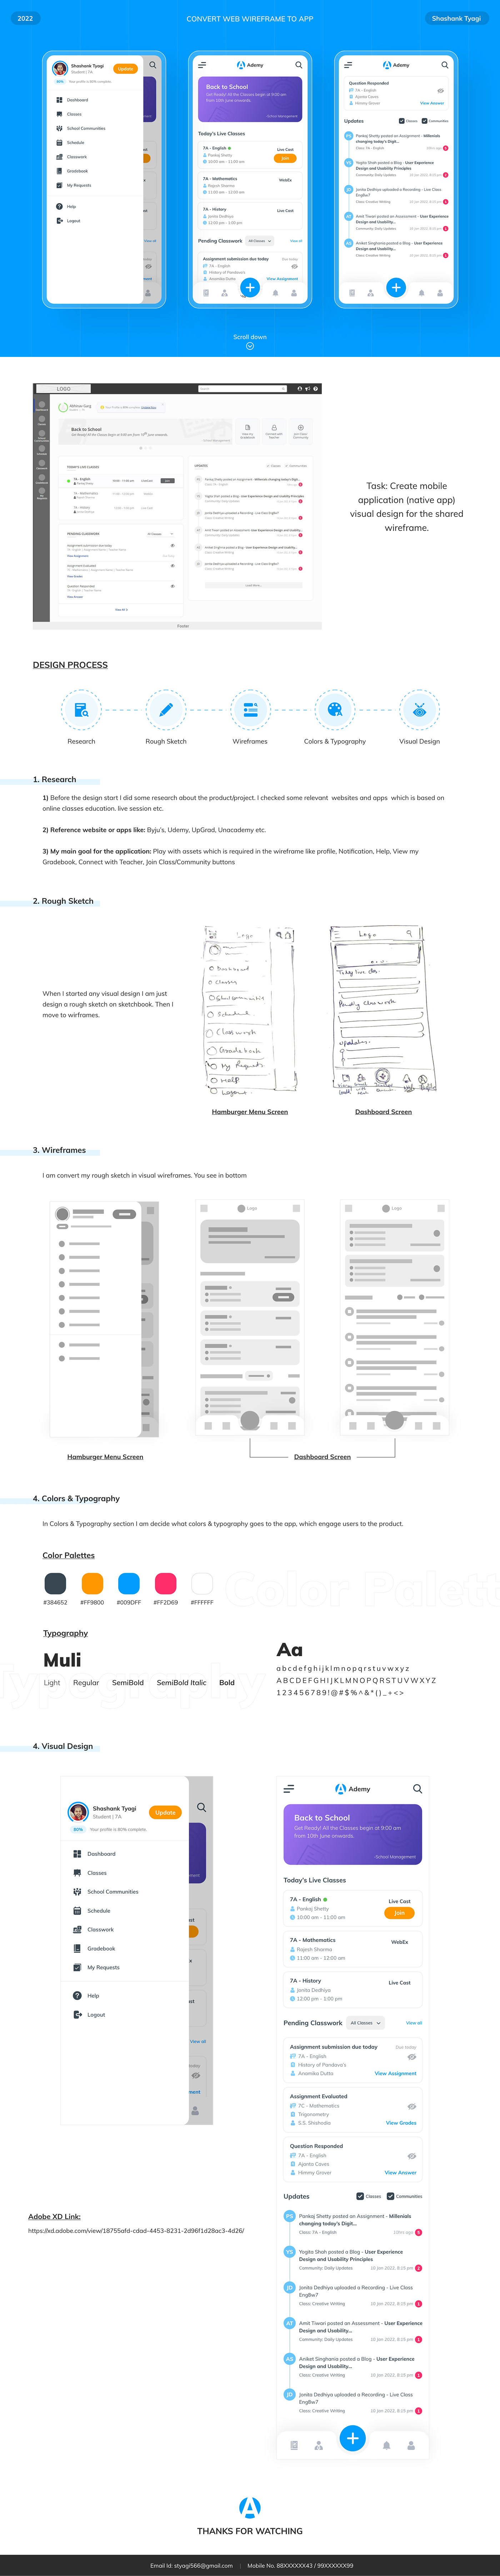 UI/UX UI ui design uiux uidesign uxdesign Mobile app user experience app design Case Study